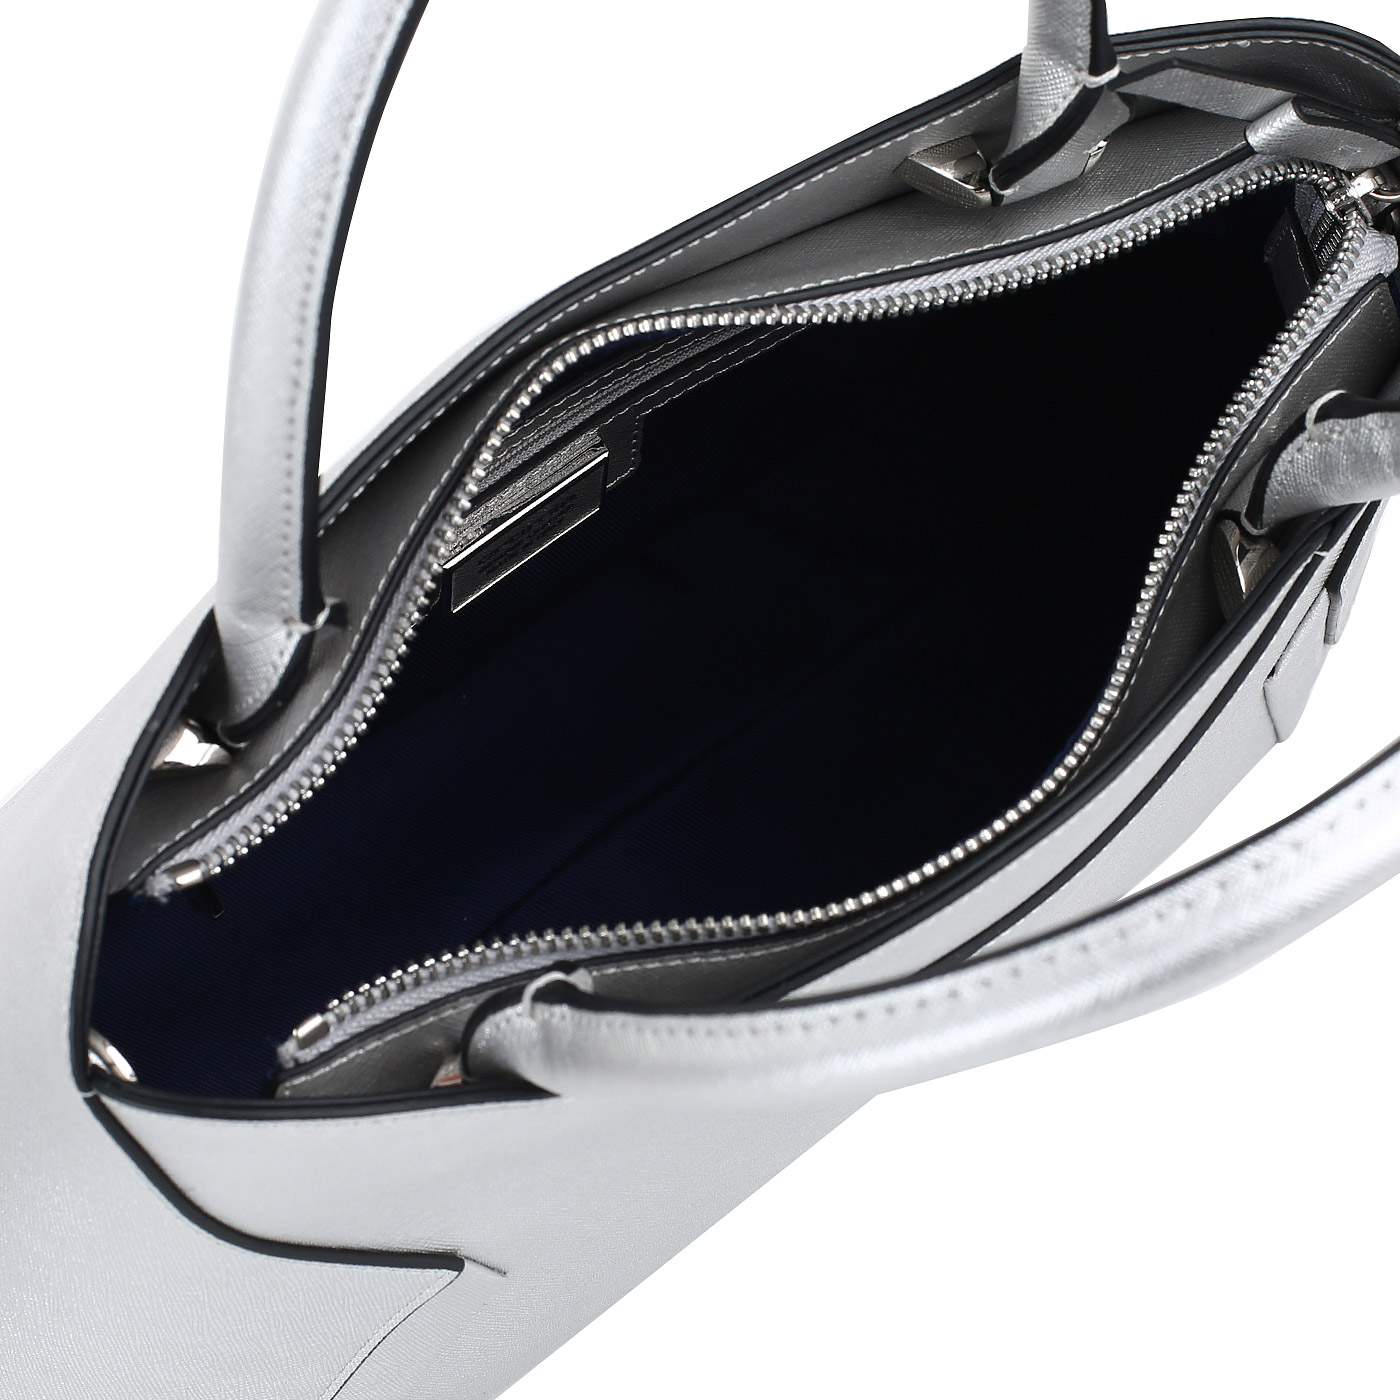 Элегантная сумка из металлизированного сафьяна Cromia Wisper